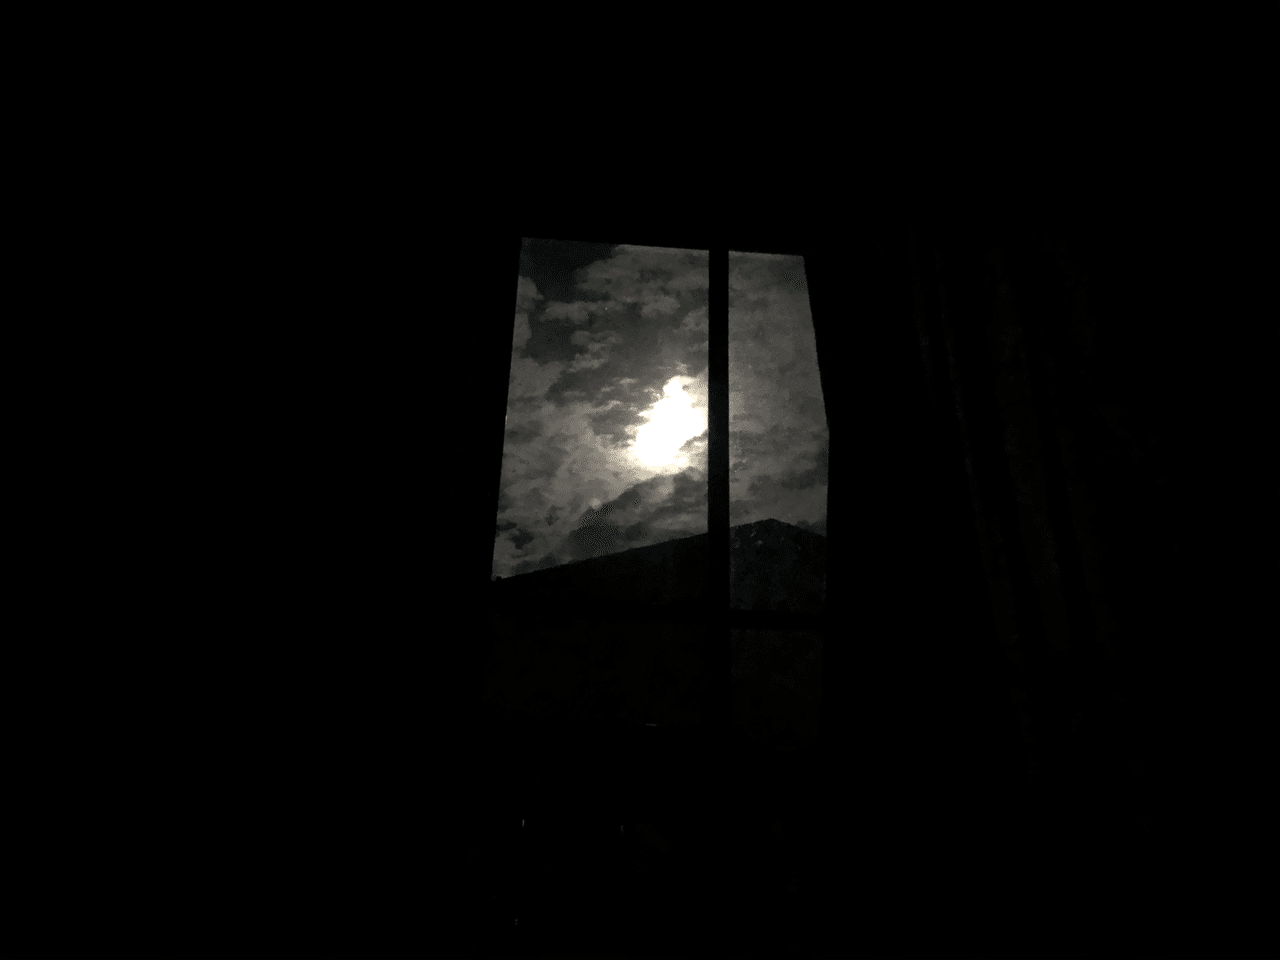 窓から差し込む光がまぶしくて 月が明るい夜でした そっと伝えたくなった夜でした Wataame148 Miyan Note